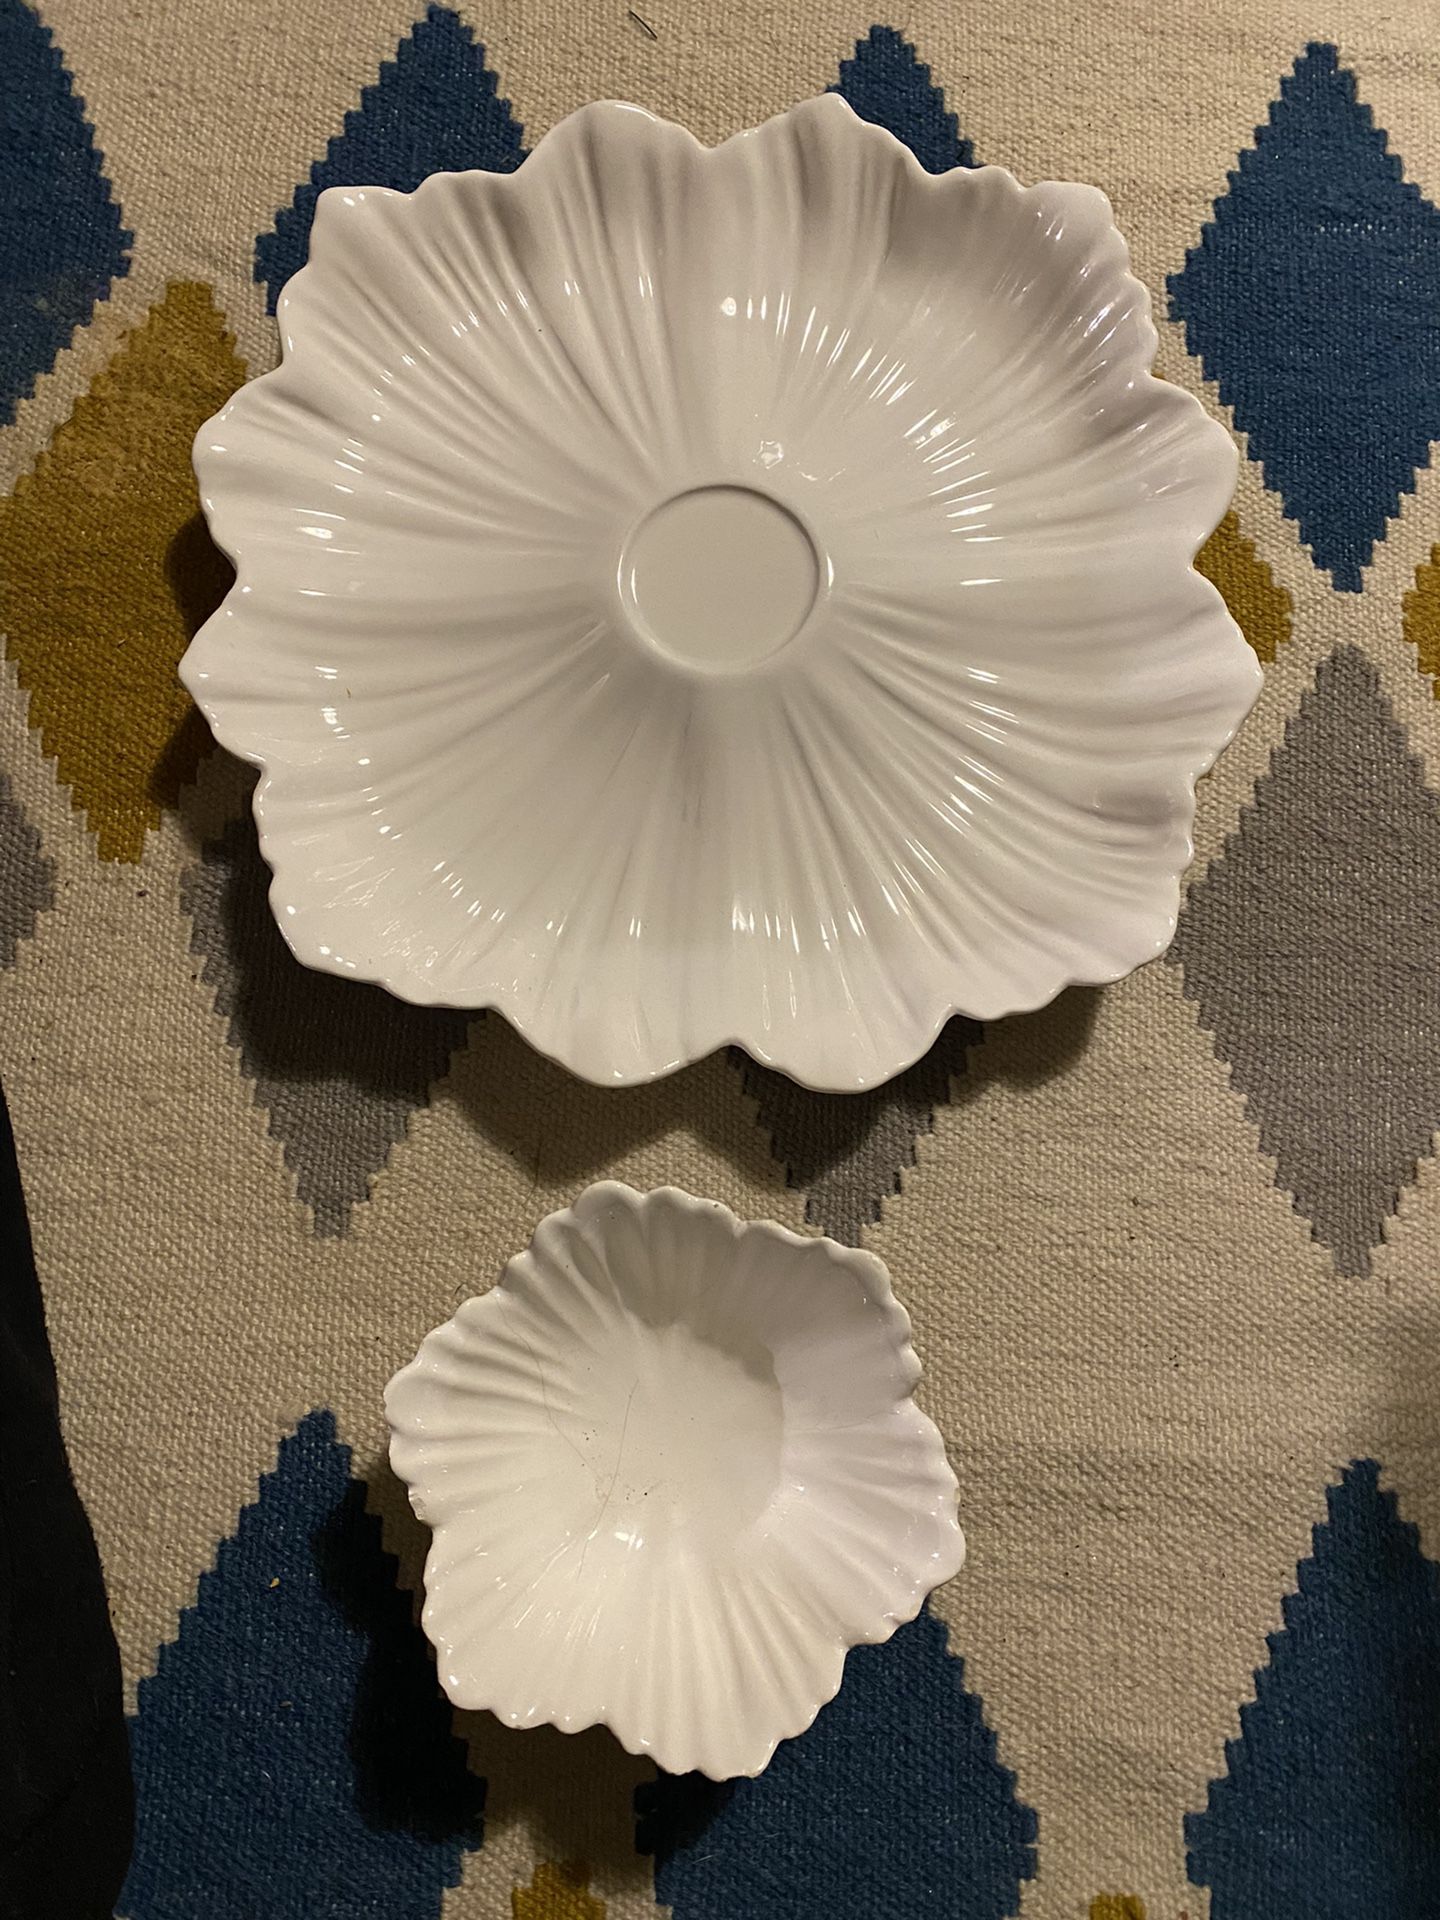 White Ceramic Flower Bowl